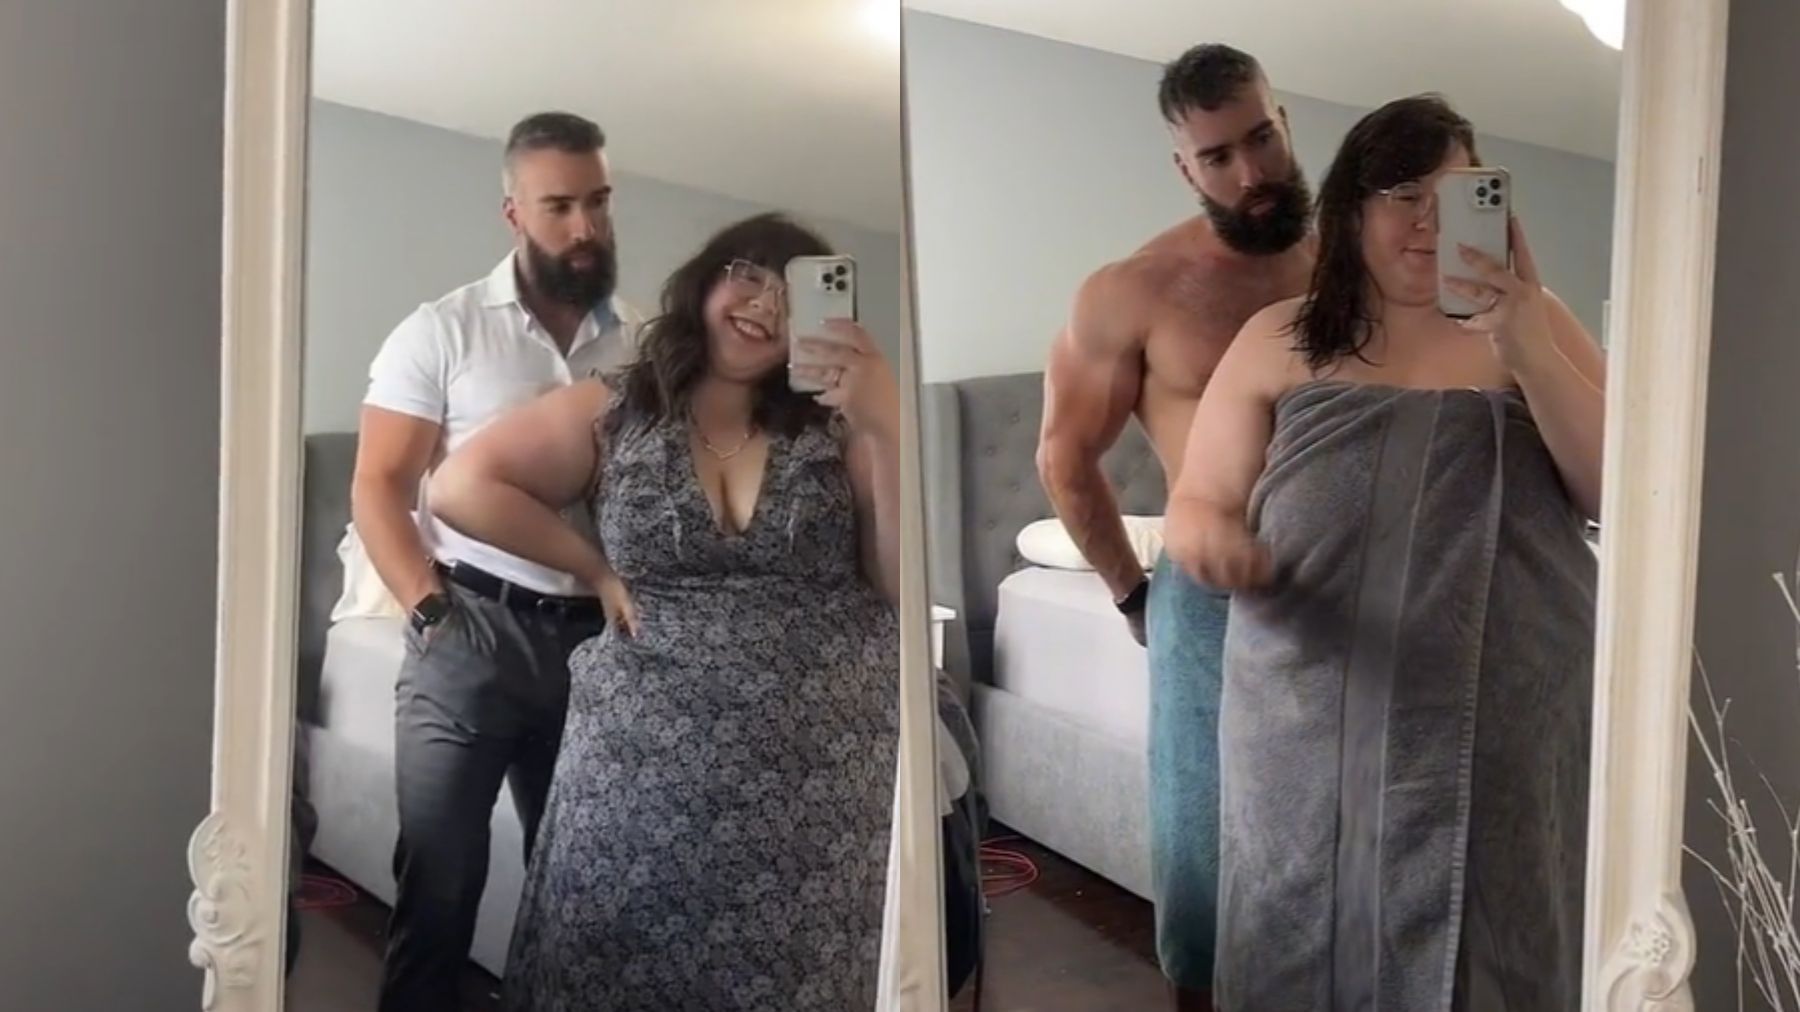 Una chica responde a quienes juzgan su relación por estar más gorda que su pareja Foto Porno Hd